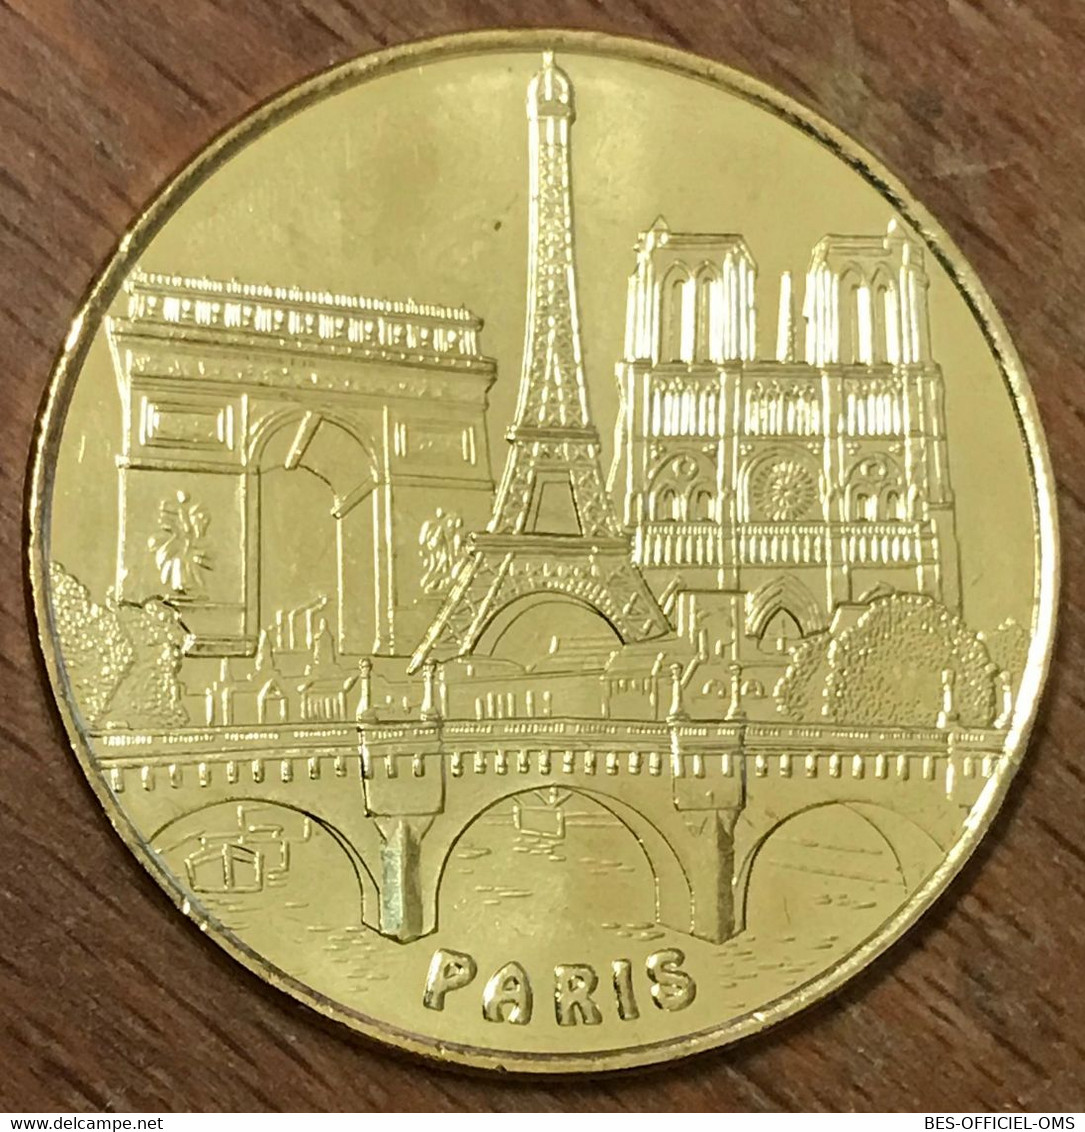 75015 PARIS 5 MONUMENTS TOUR EIFFEL MDP 2019 MÉDAILLE SOUVENIR MONNAIE DE PARIS JETON TOURISTIQUE MEDALS COINS TOKENS - 2019